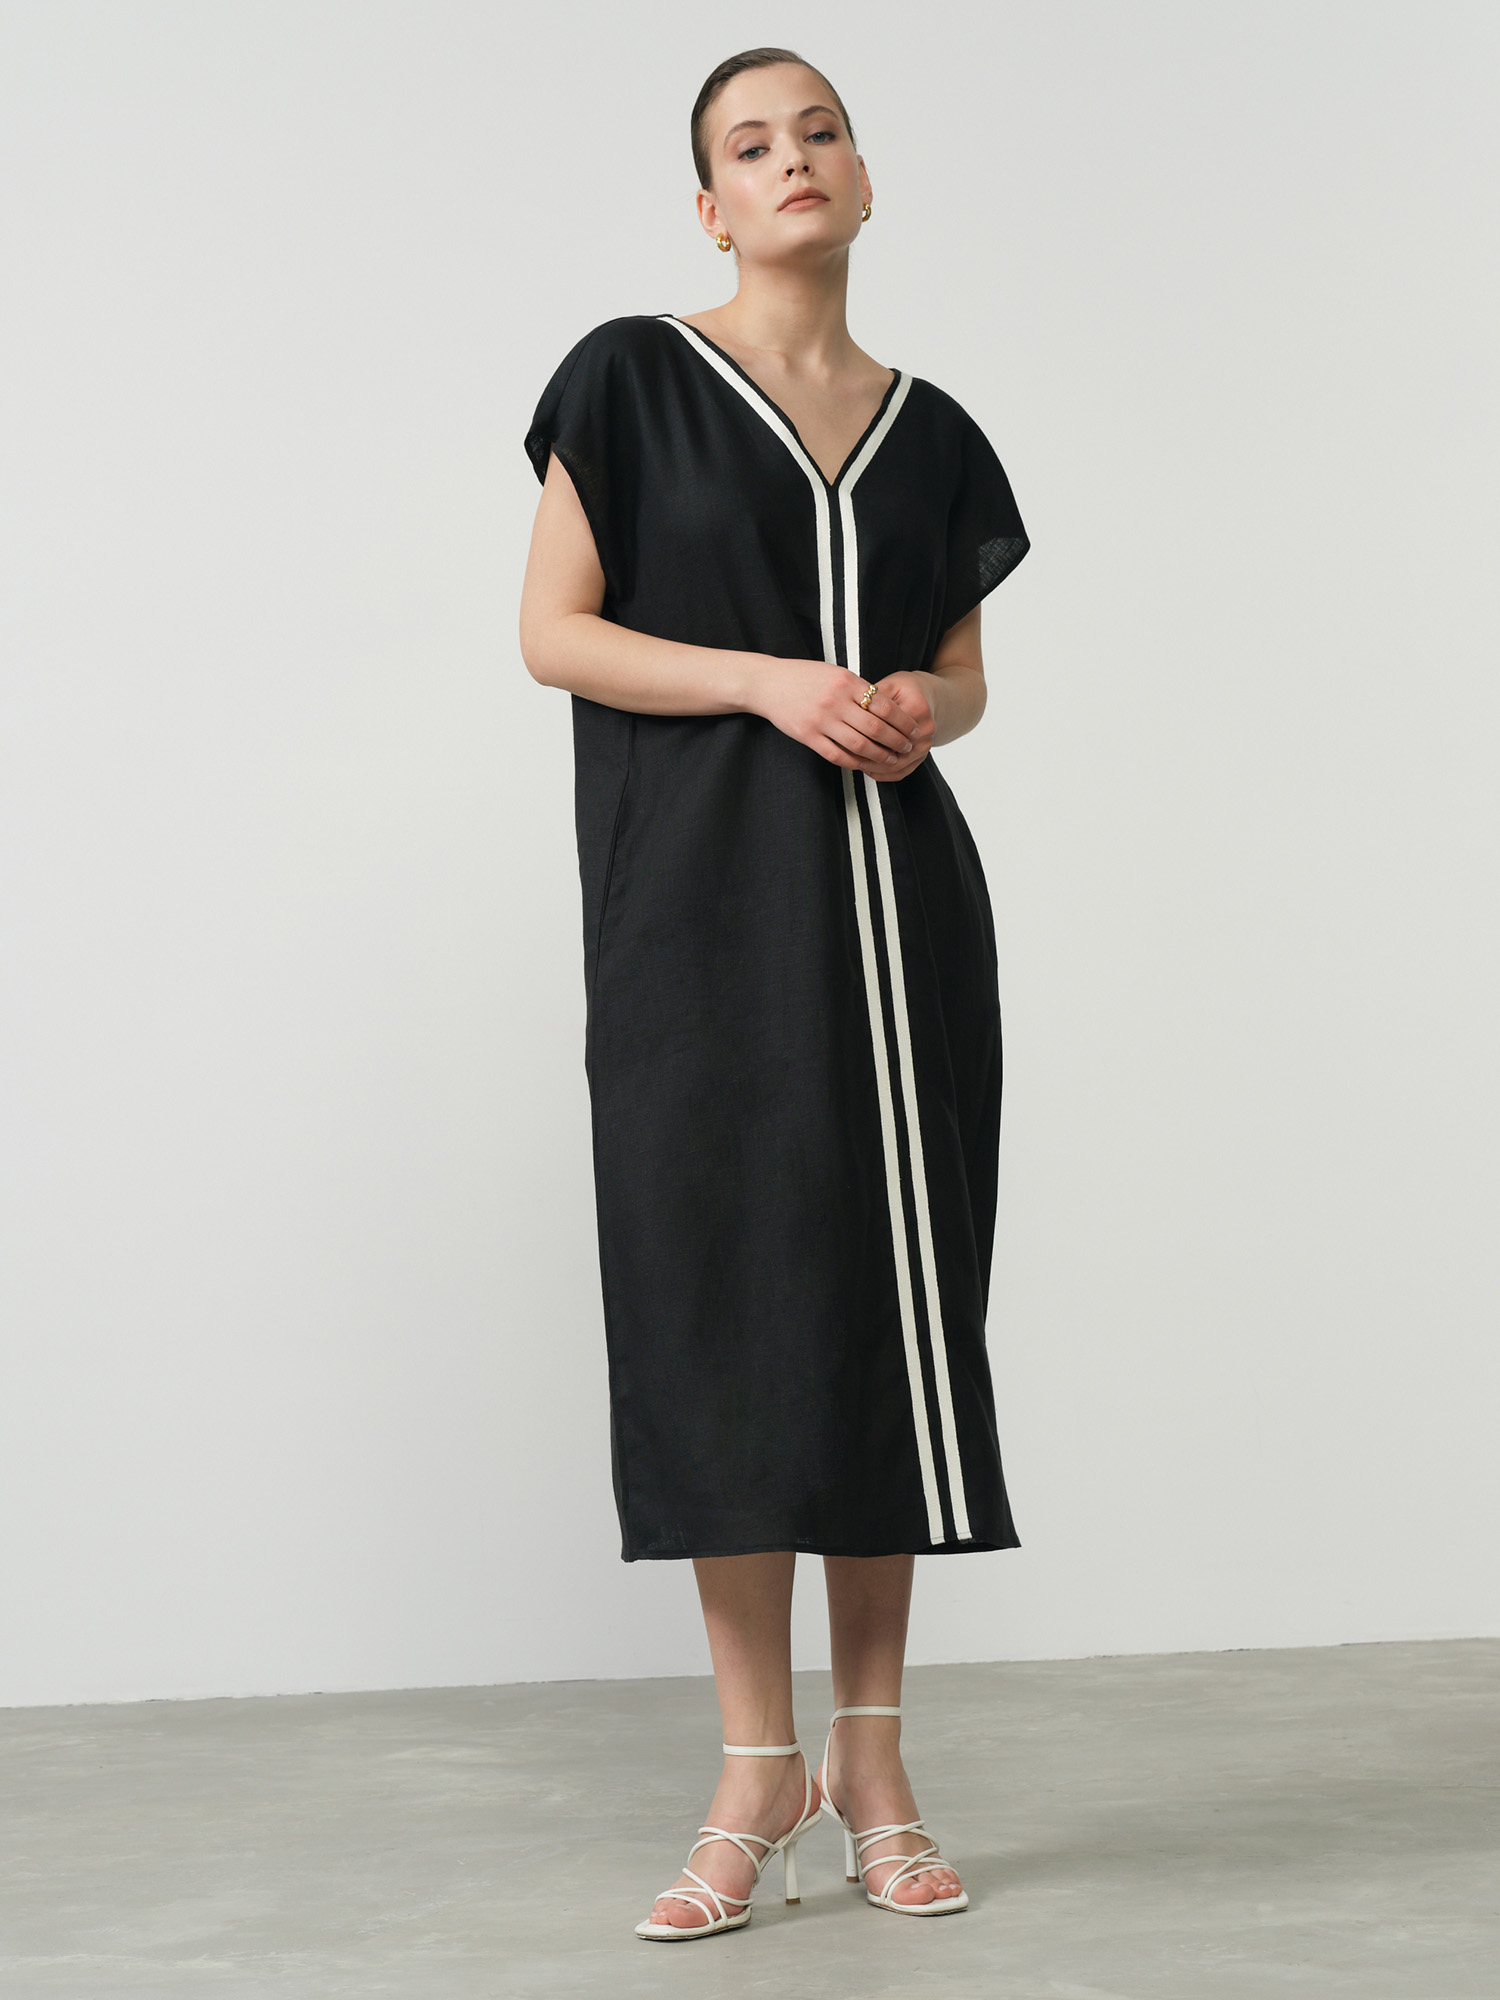 Платье женское КЛ-8014-ИЛ24 черное 56, цвет черный, размер 56